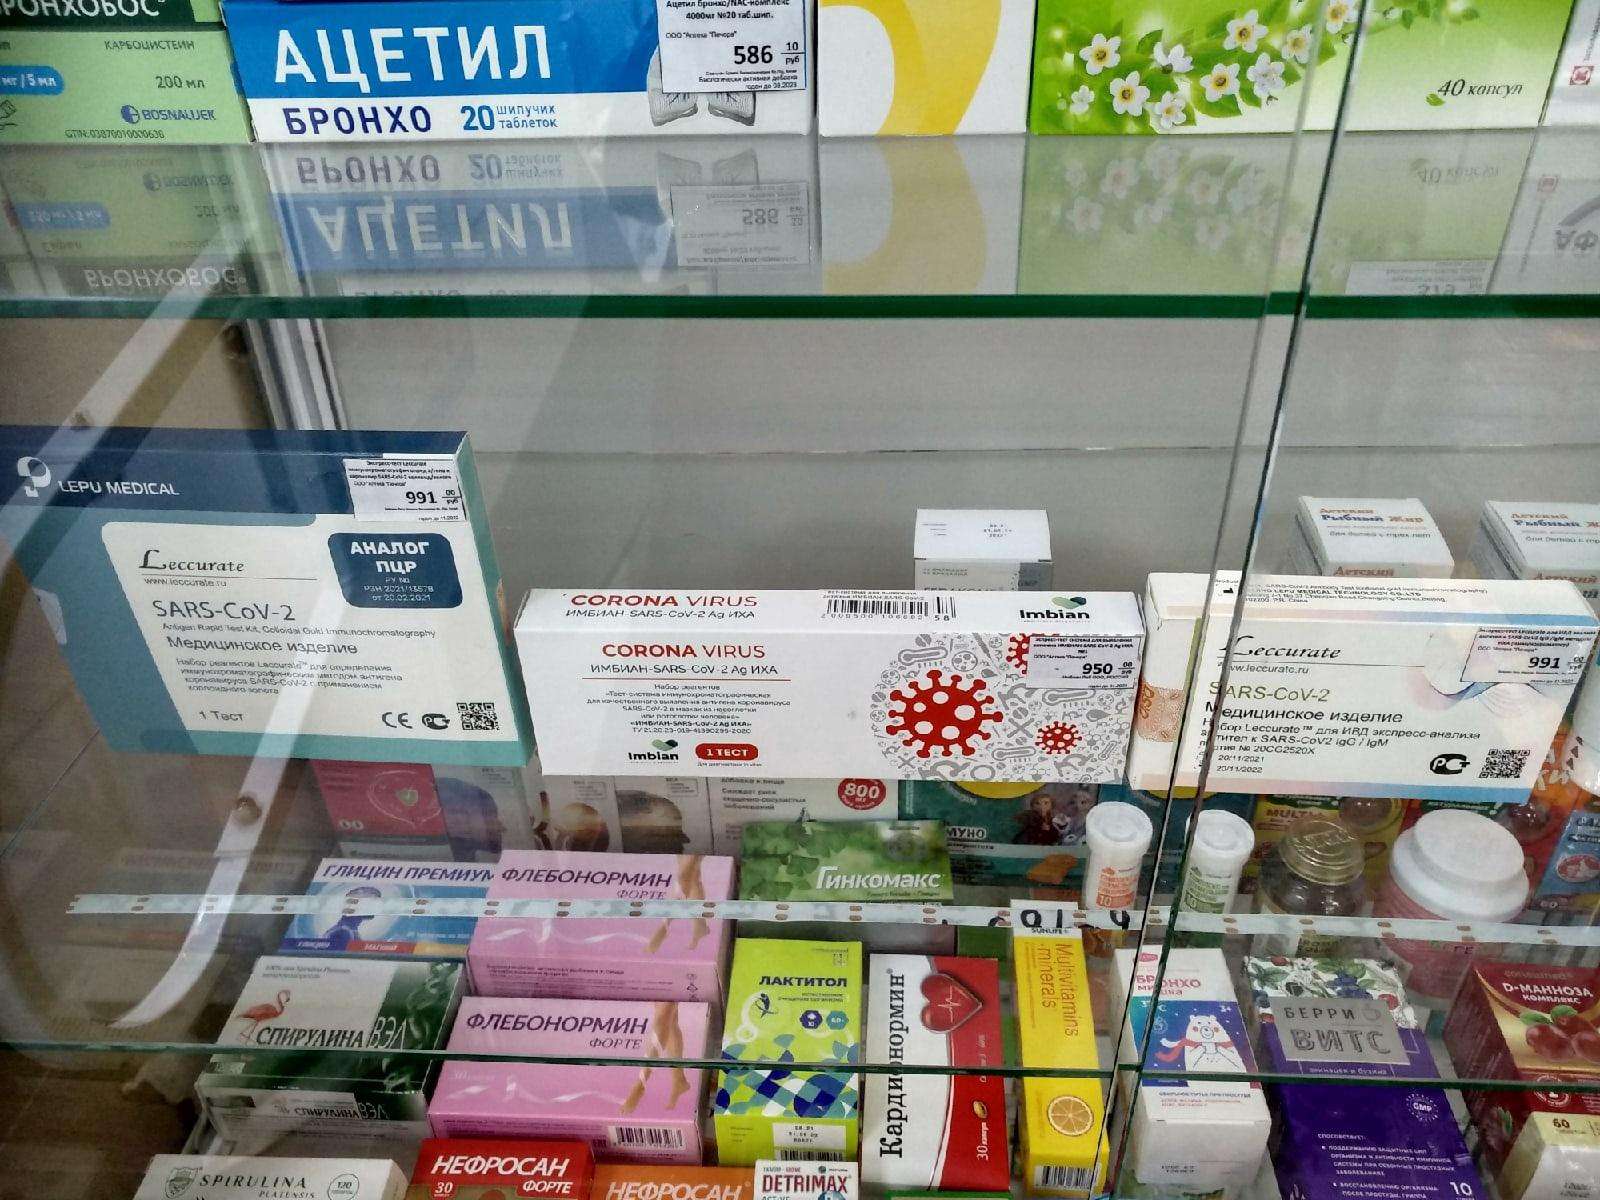 Таблетки от жадности есть? Аптеки в Новосибирской области отмечают снижение спроса на пилюли